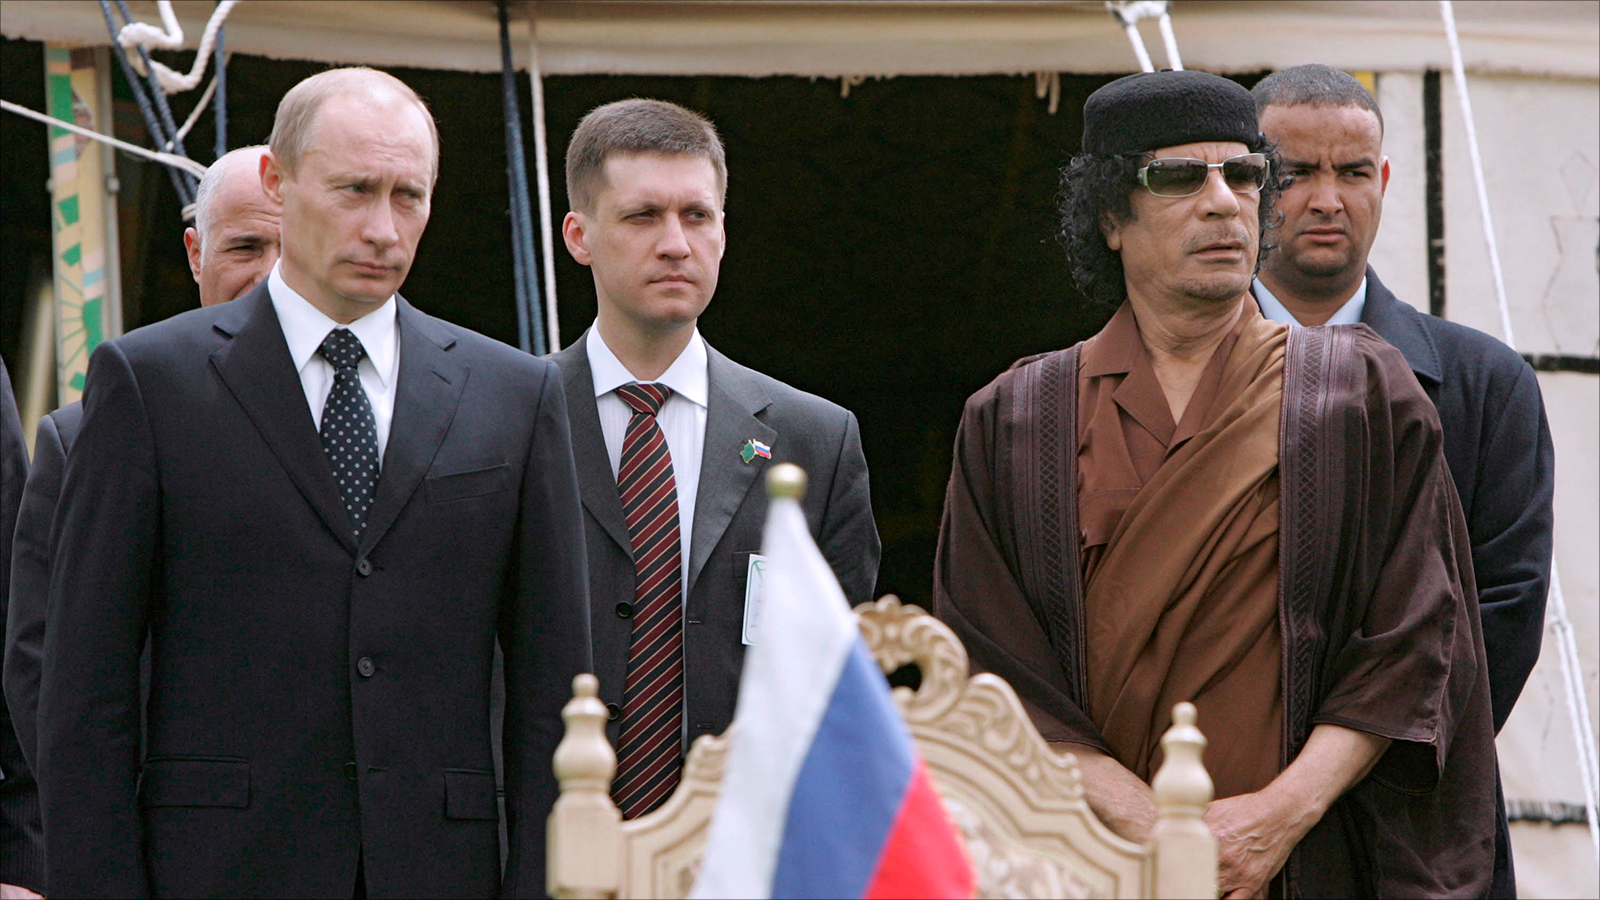 العقيد الراحل معمر القذافي مع الرئيس الروسي فلاديمير بوتين في طرابلس عام 2008 (الأوروبية)